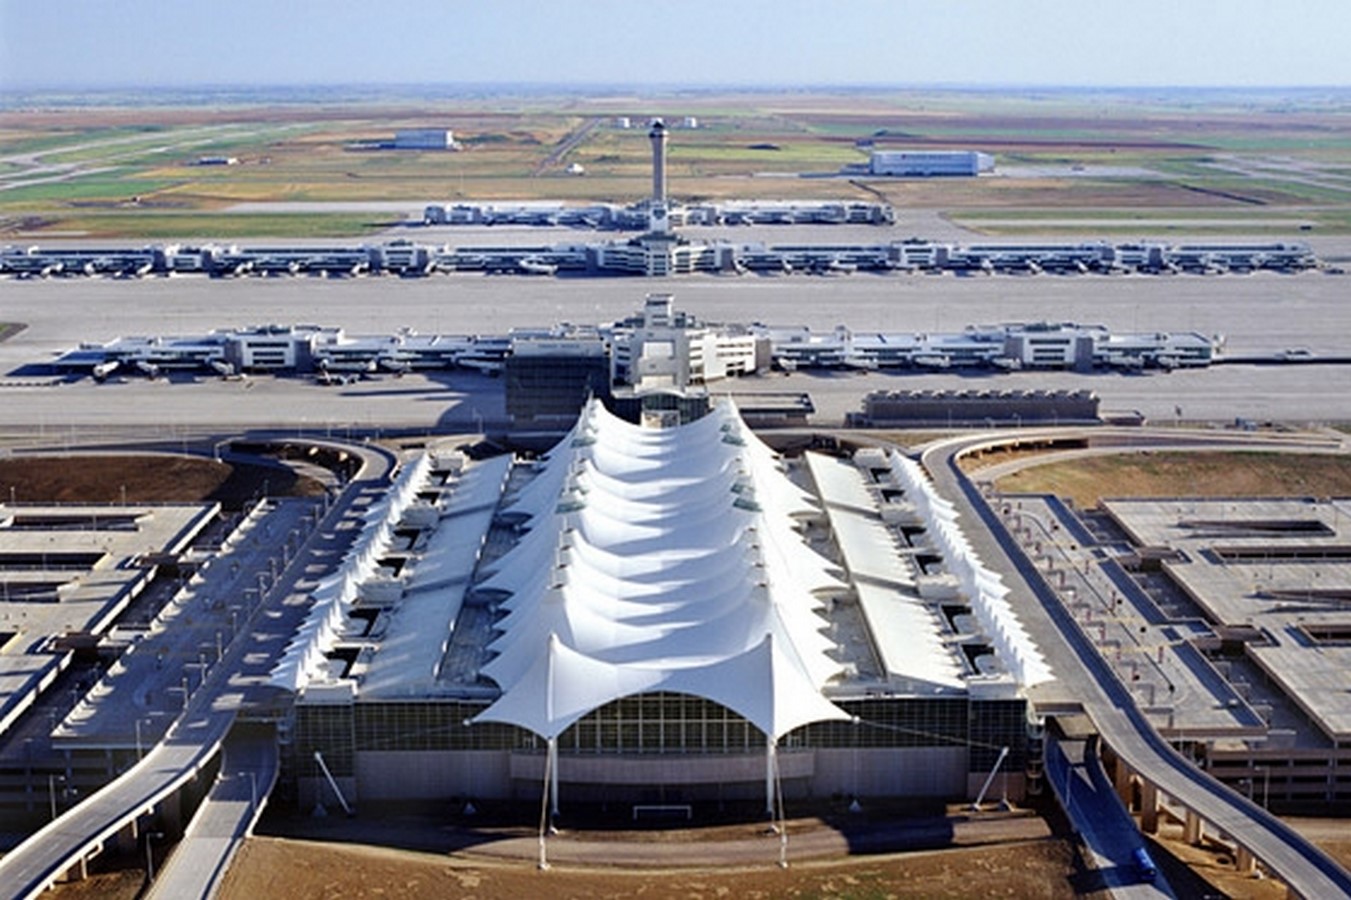 10 Des conceptions d'aéroports inspirantes dans le monde entier - Feuille7 